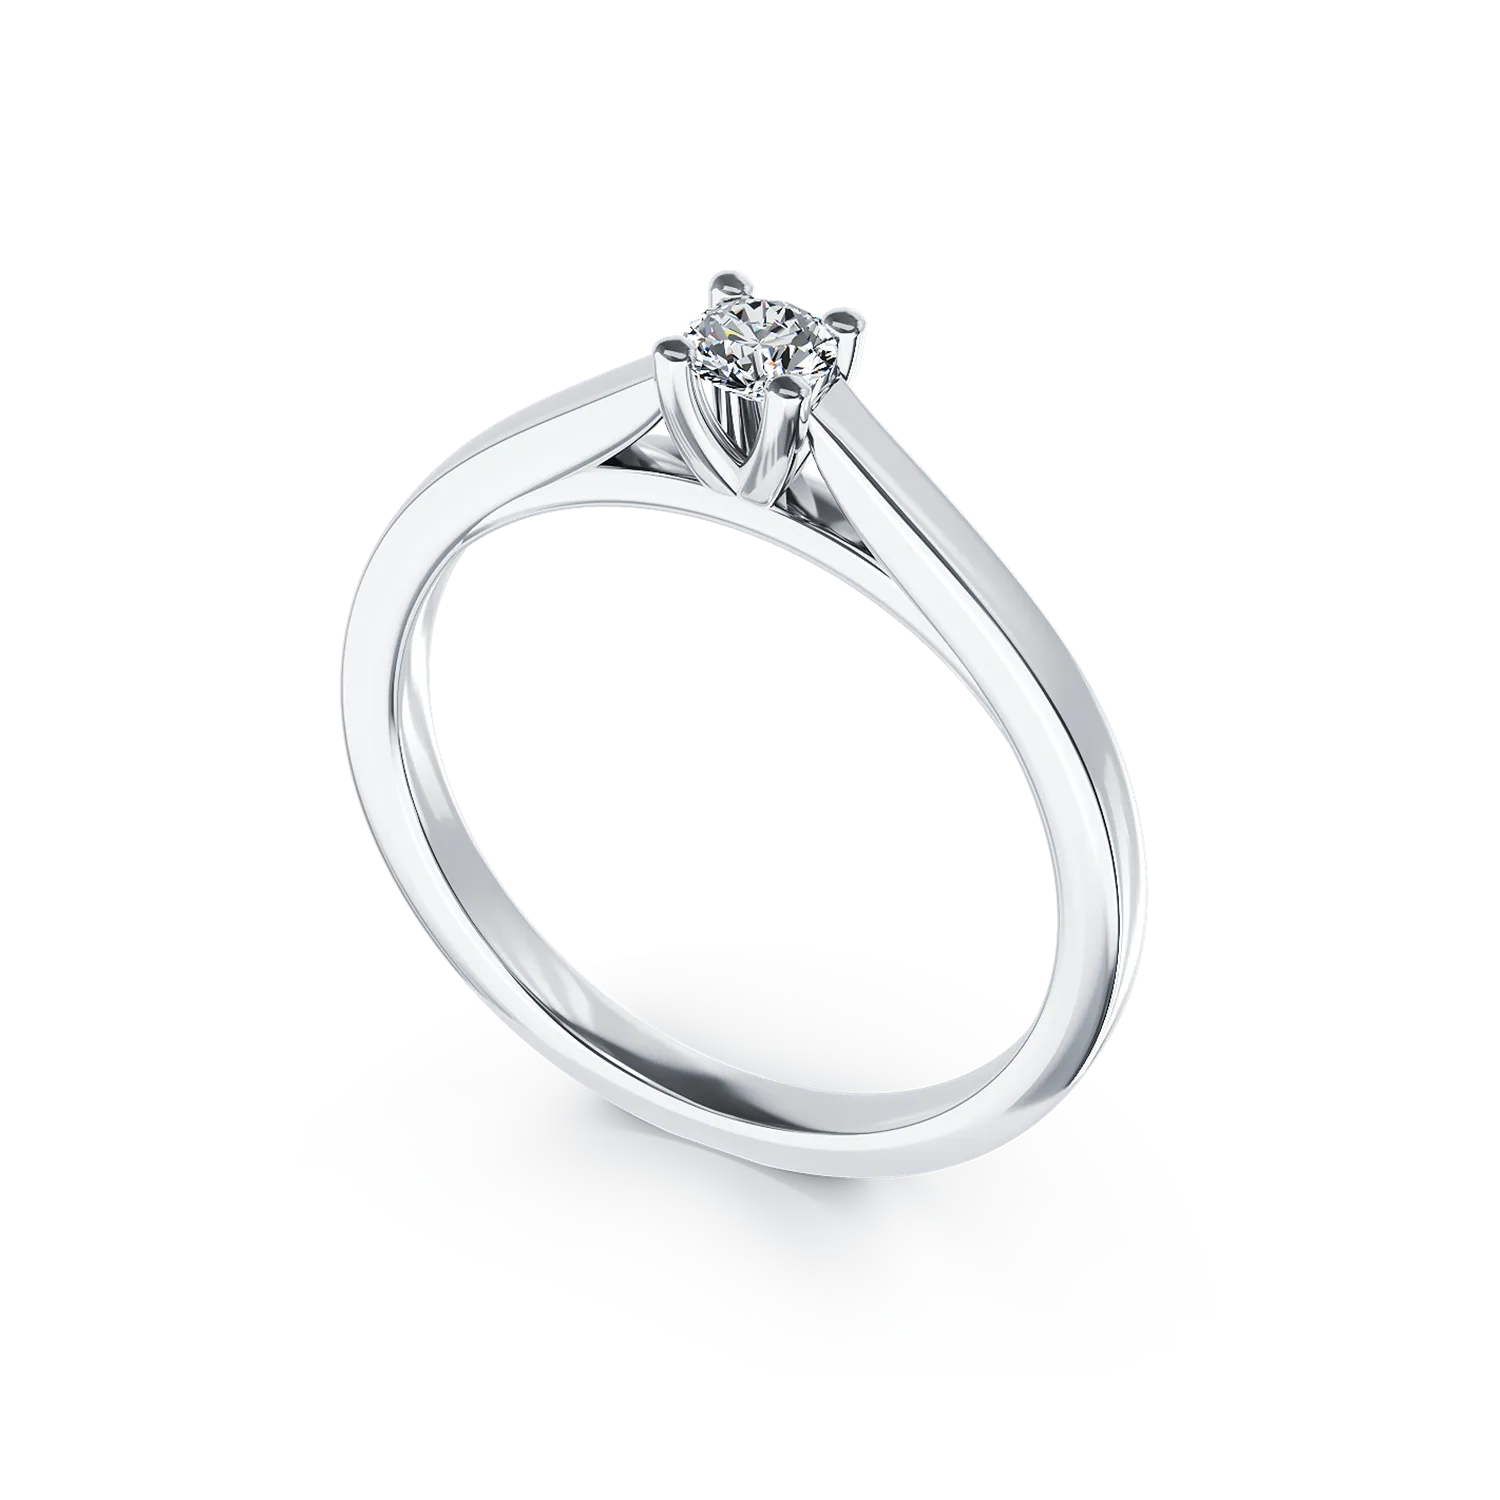 Eljegyzési gyűrű 18K-os fehér aranyból 0,14ct gyémánttal. Gramm: 3,2